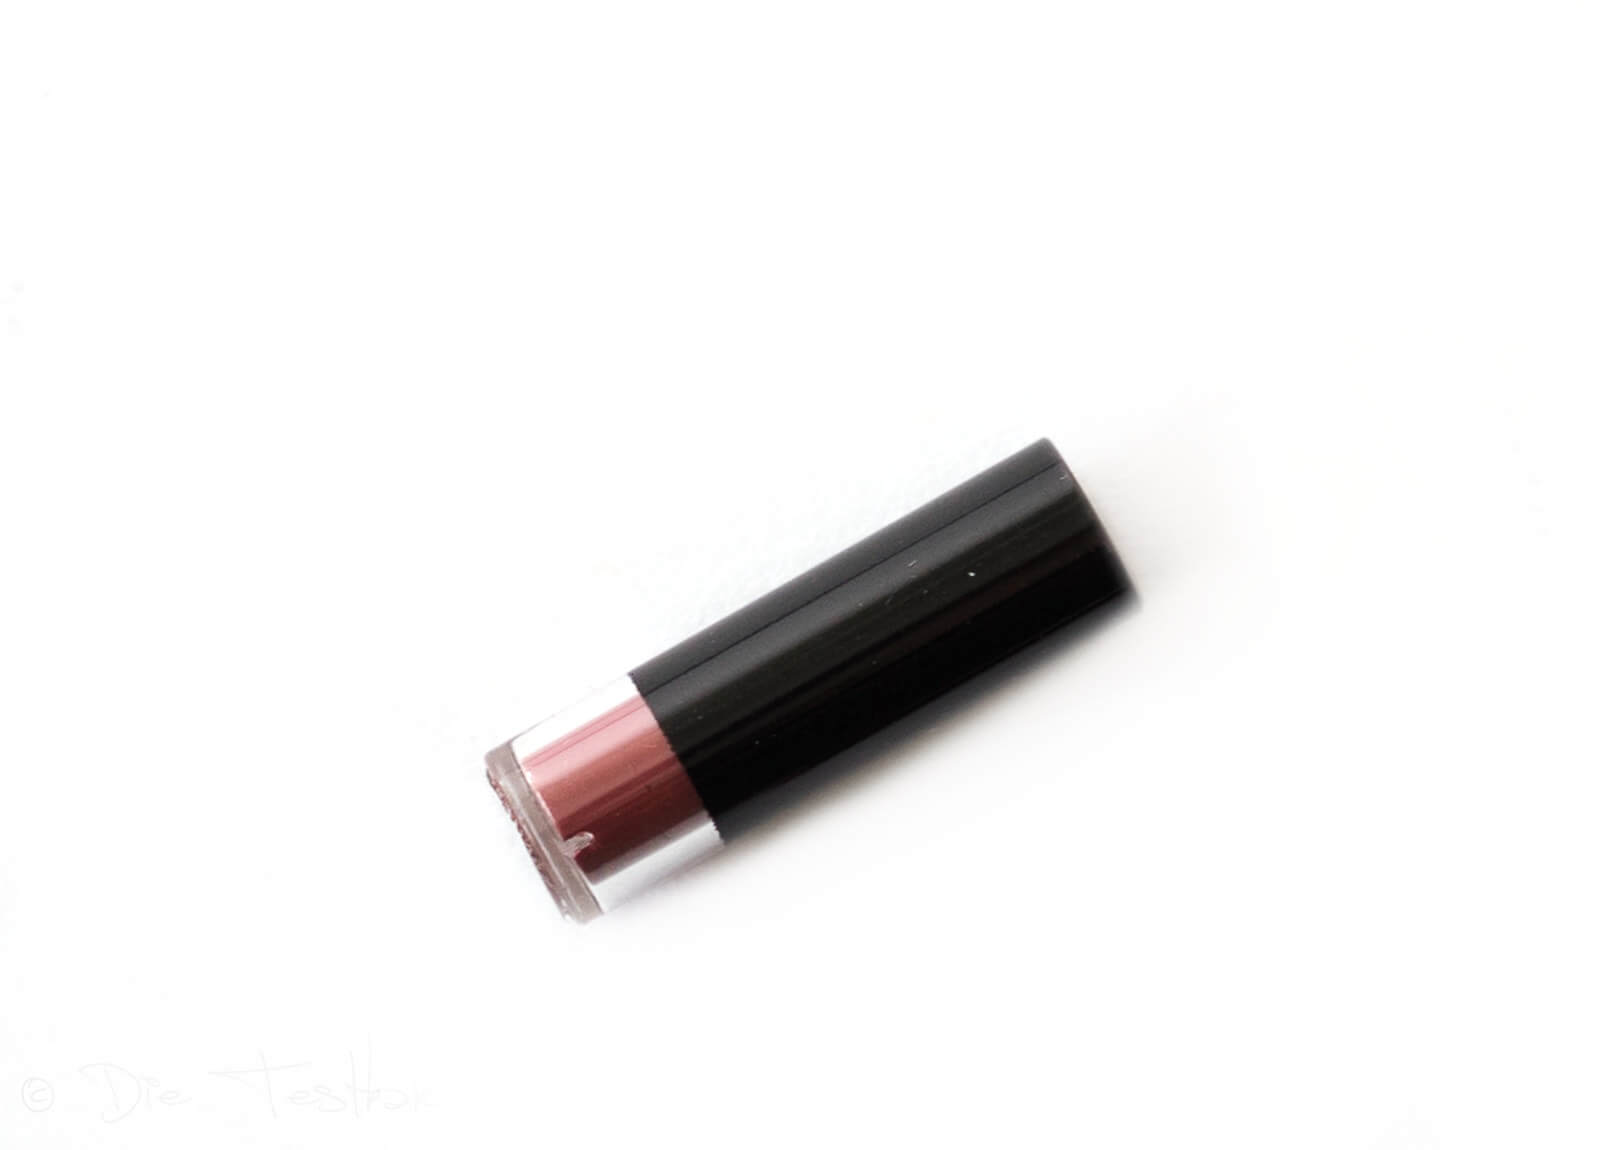 Für ein wunderschönes Augen- und Lippen-Make-up - Hochwertige Produkte von makeupcoach 36